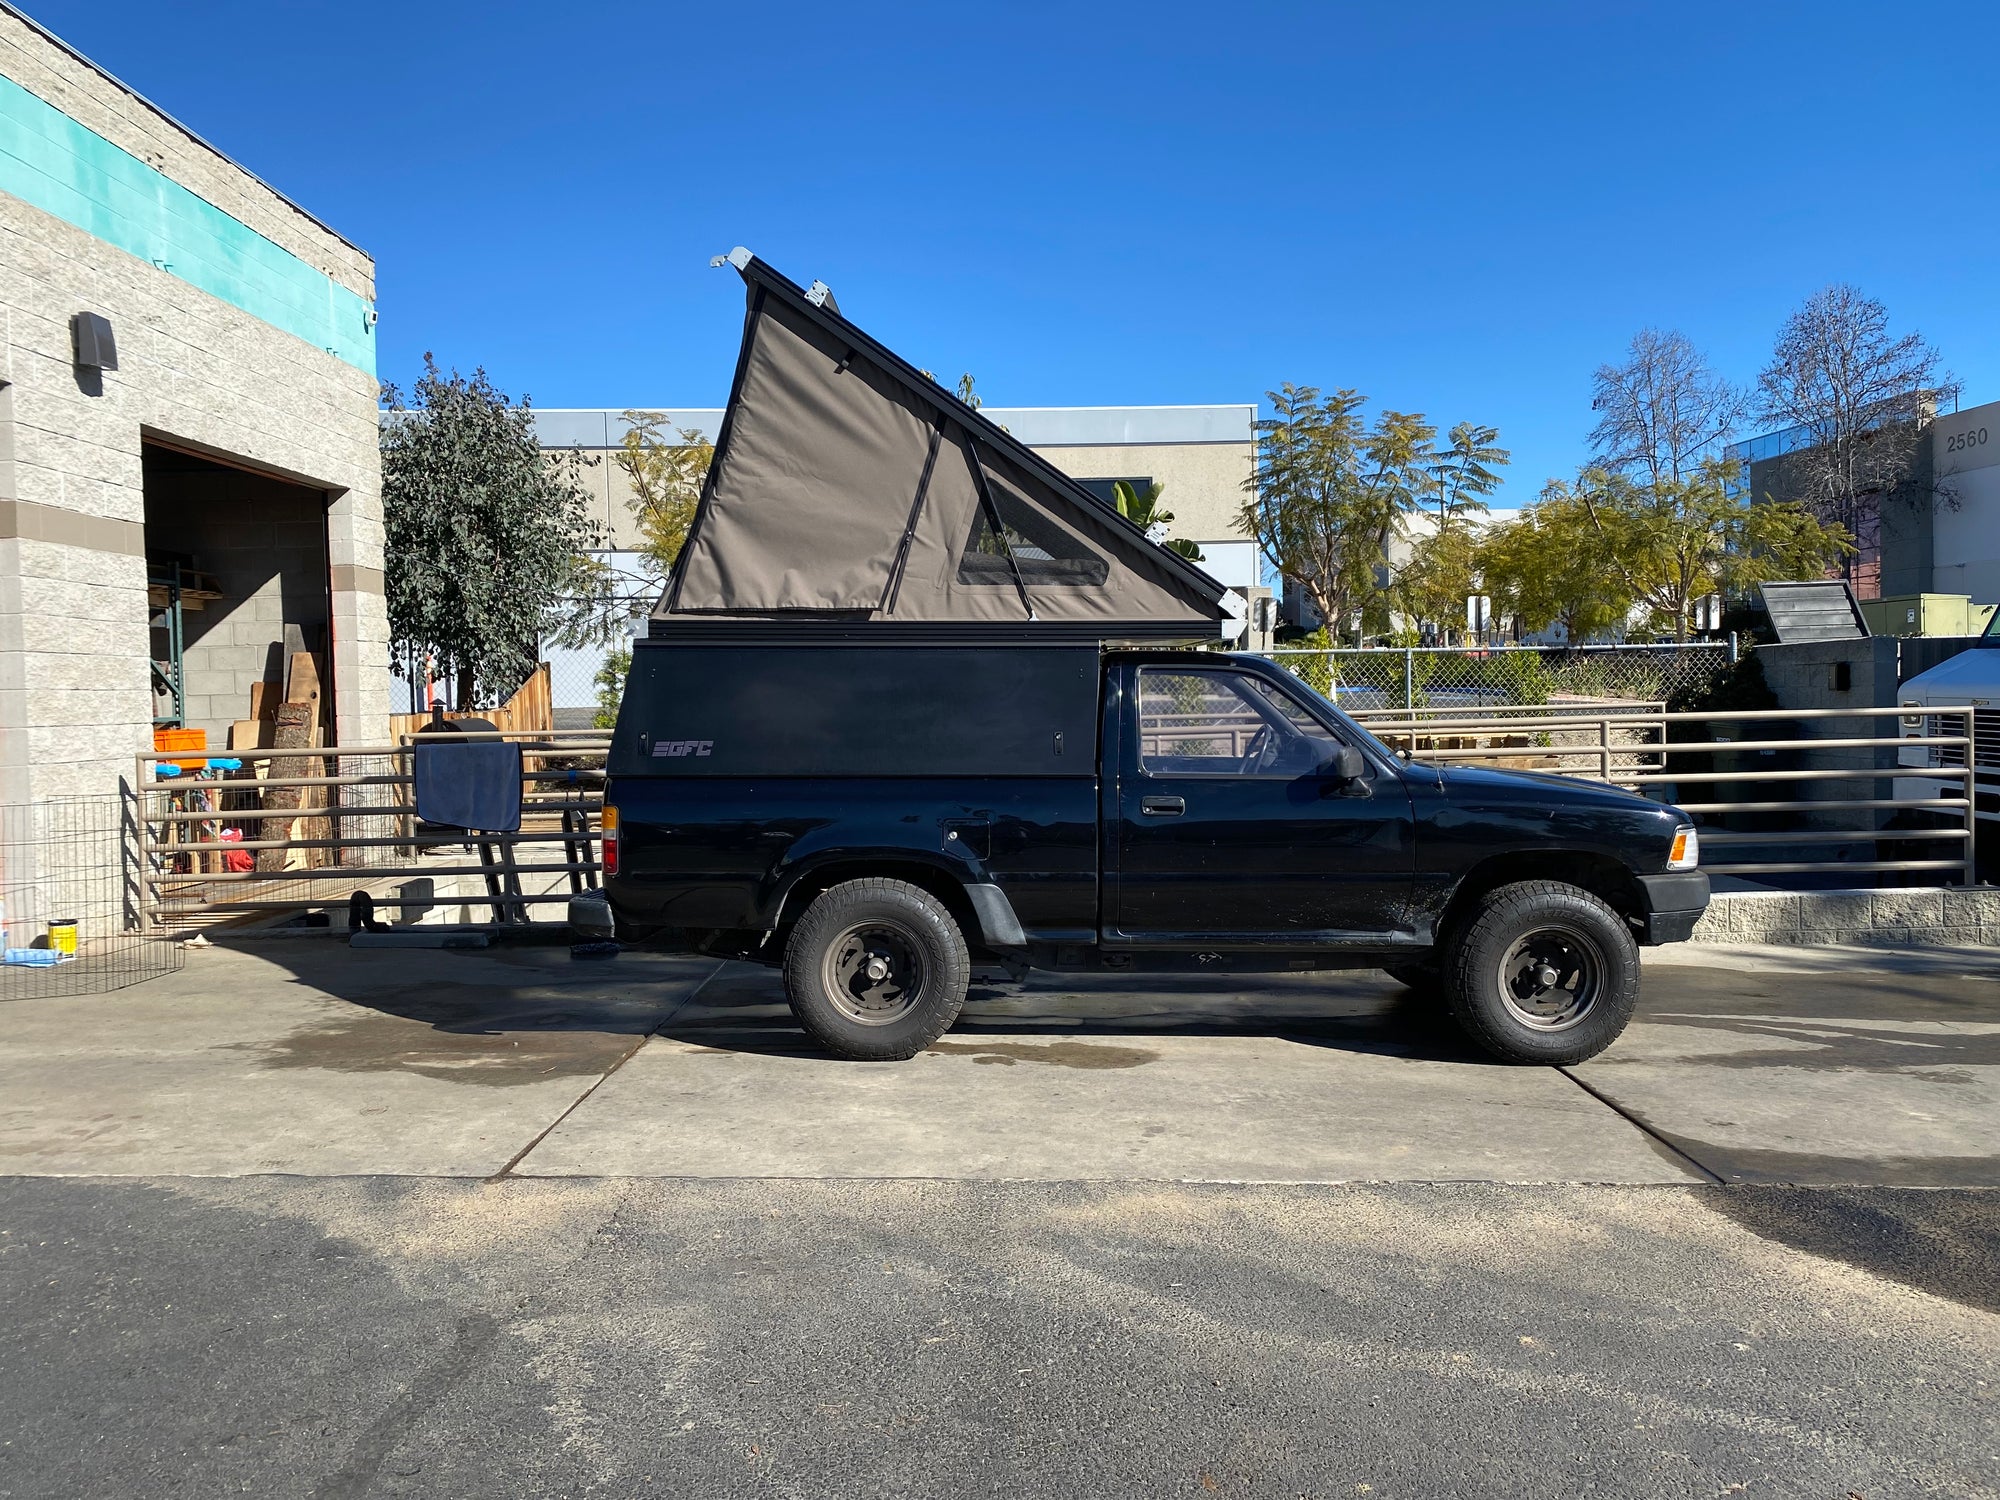 1994 Toyota Pickup Camper - Build #4783